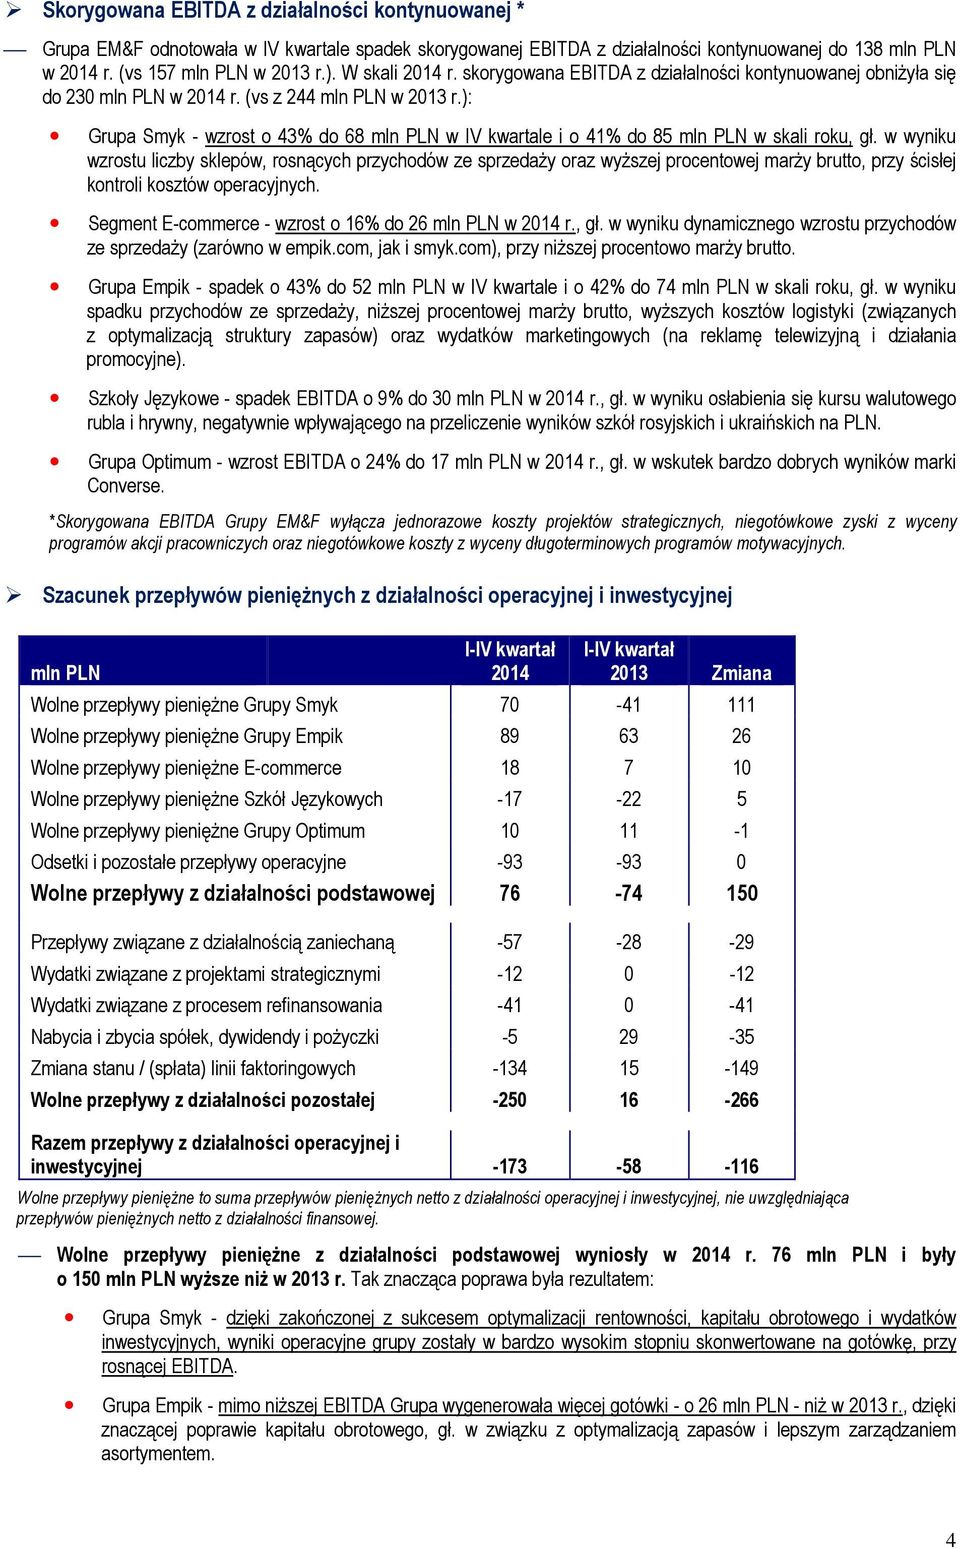 ): Grupa Smyk - wzrost o 43% do 68 mln PLN w IV kwartale i o 41% do 85 mln PLN w skali roku, gł.